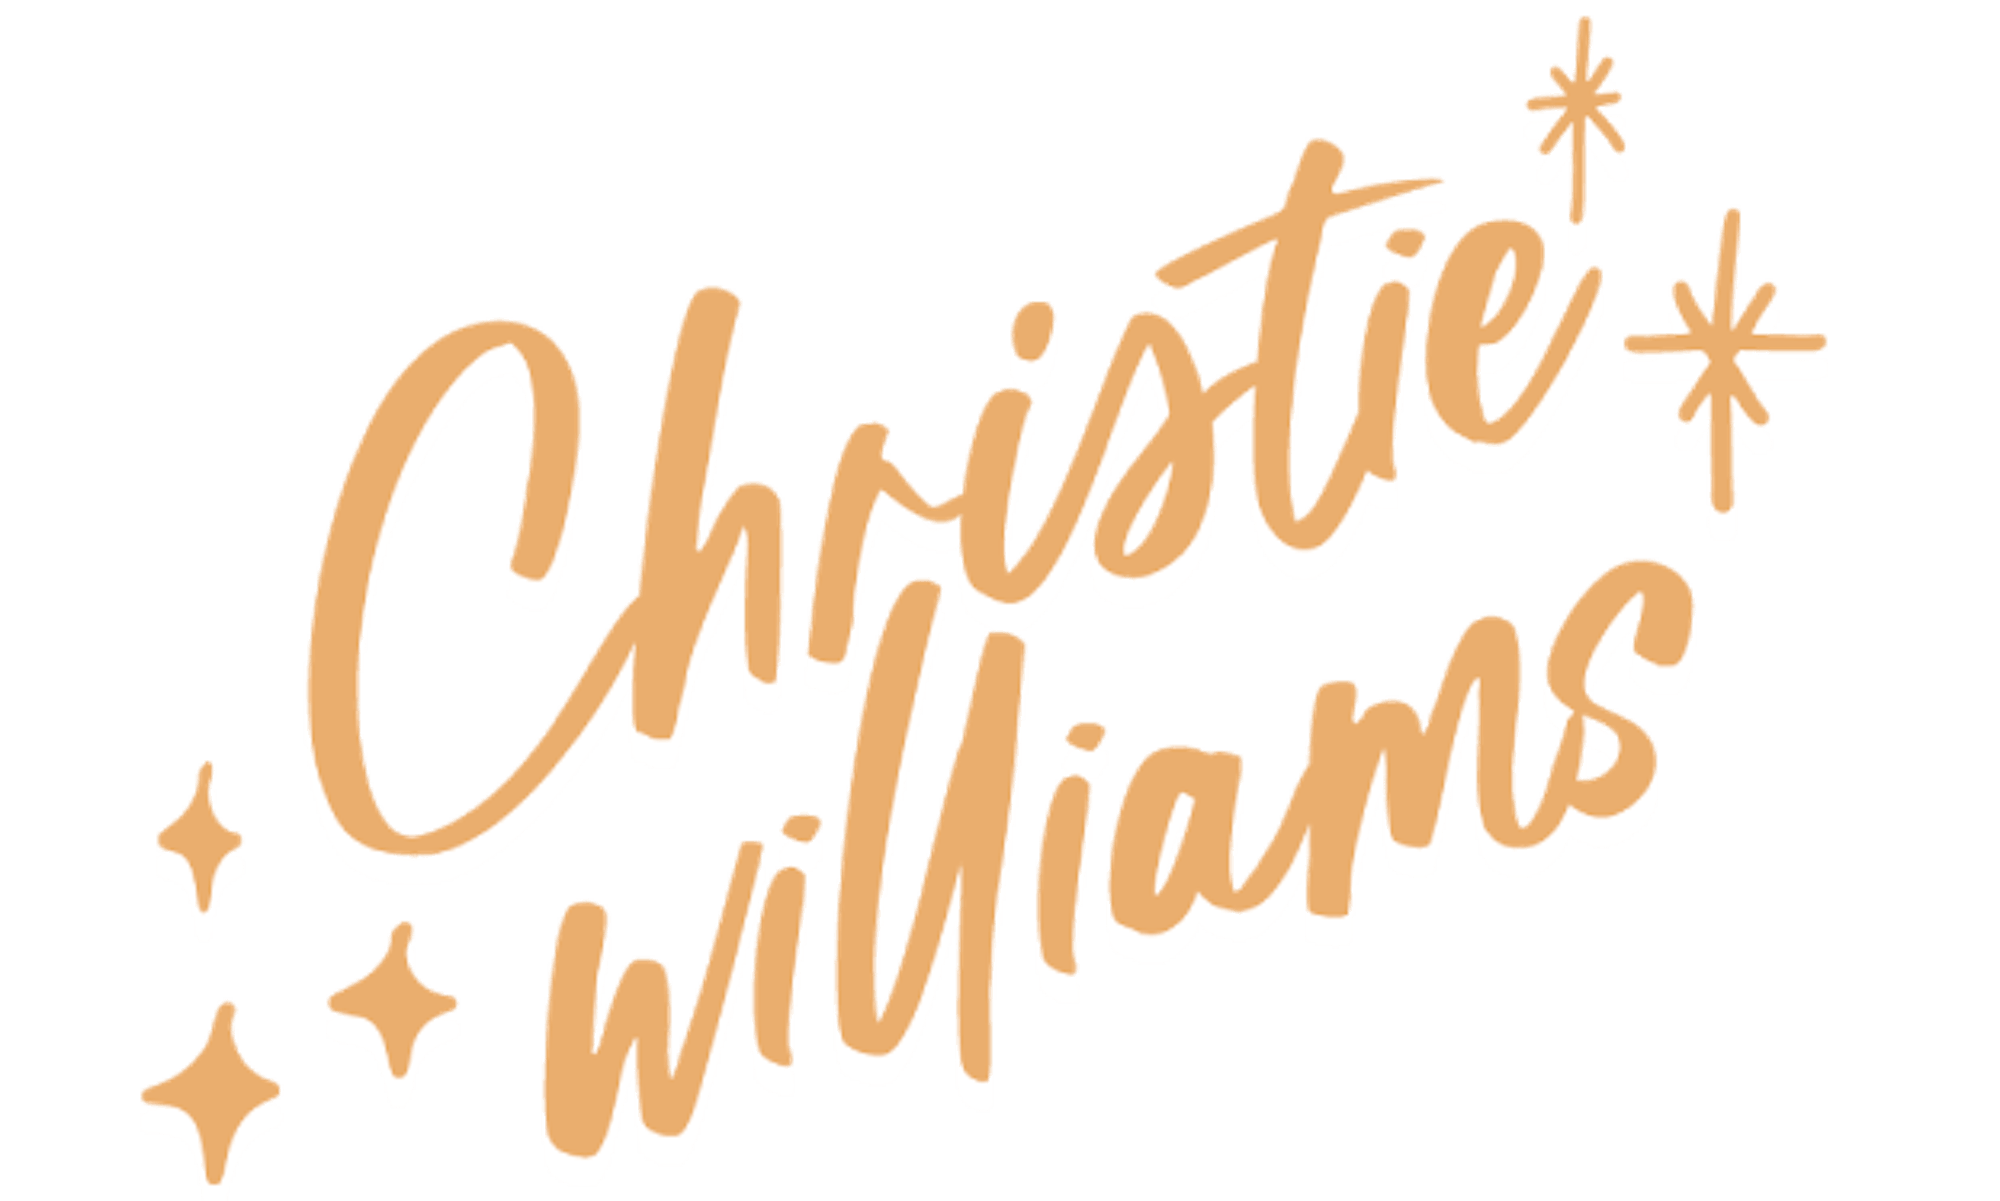 Christie Williams